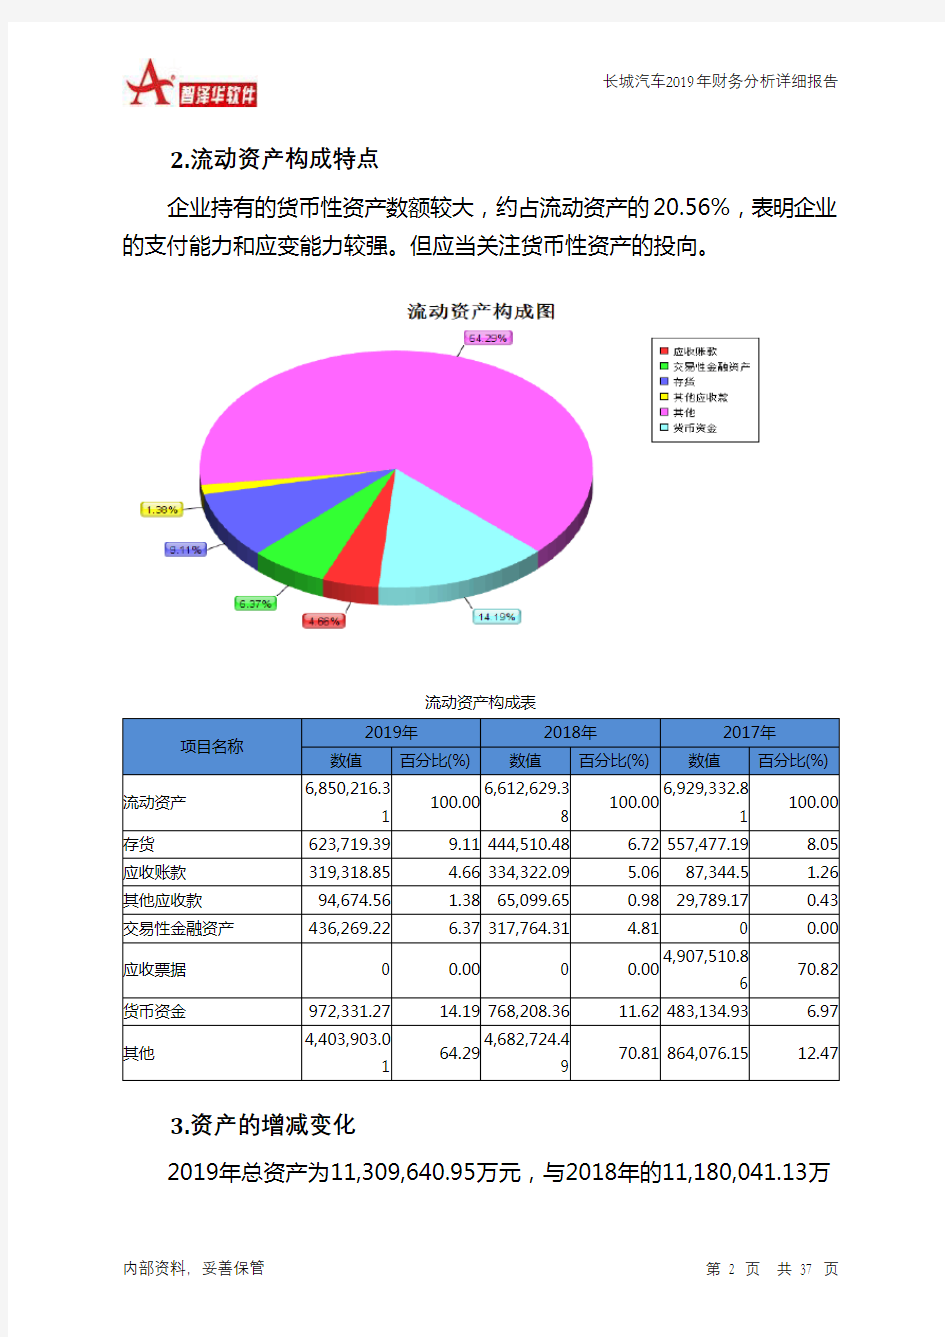 长城汽车2019年财务分析详细报告